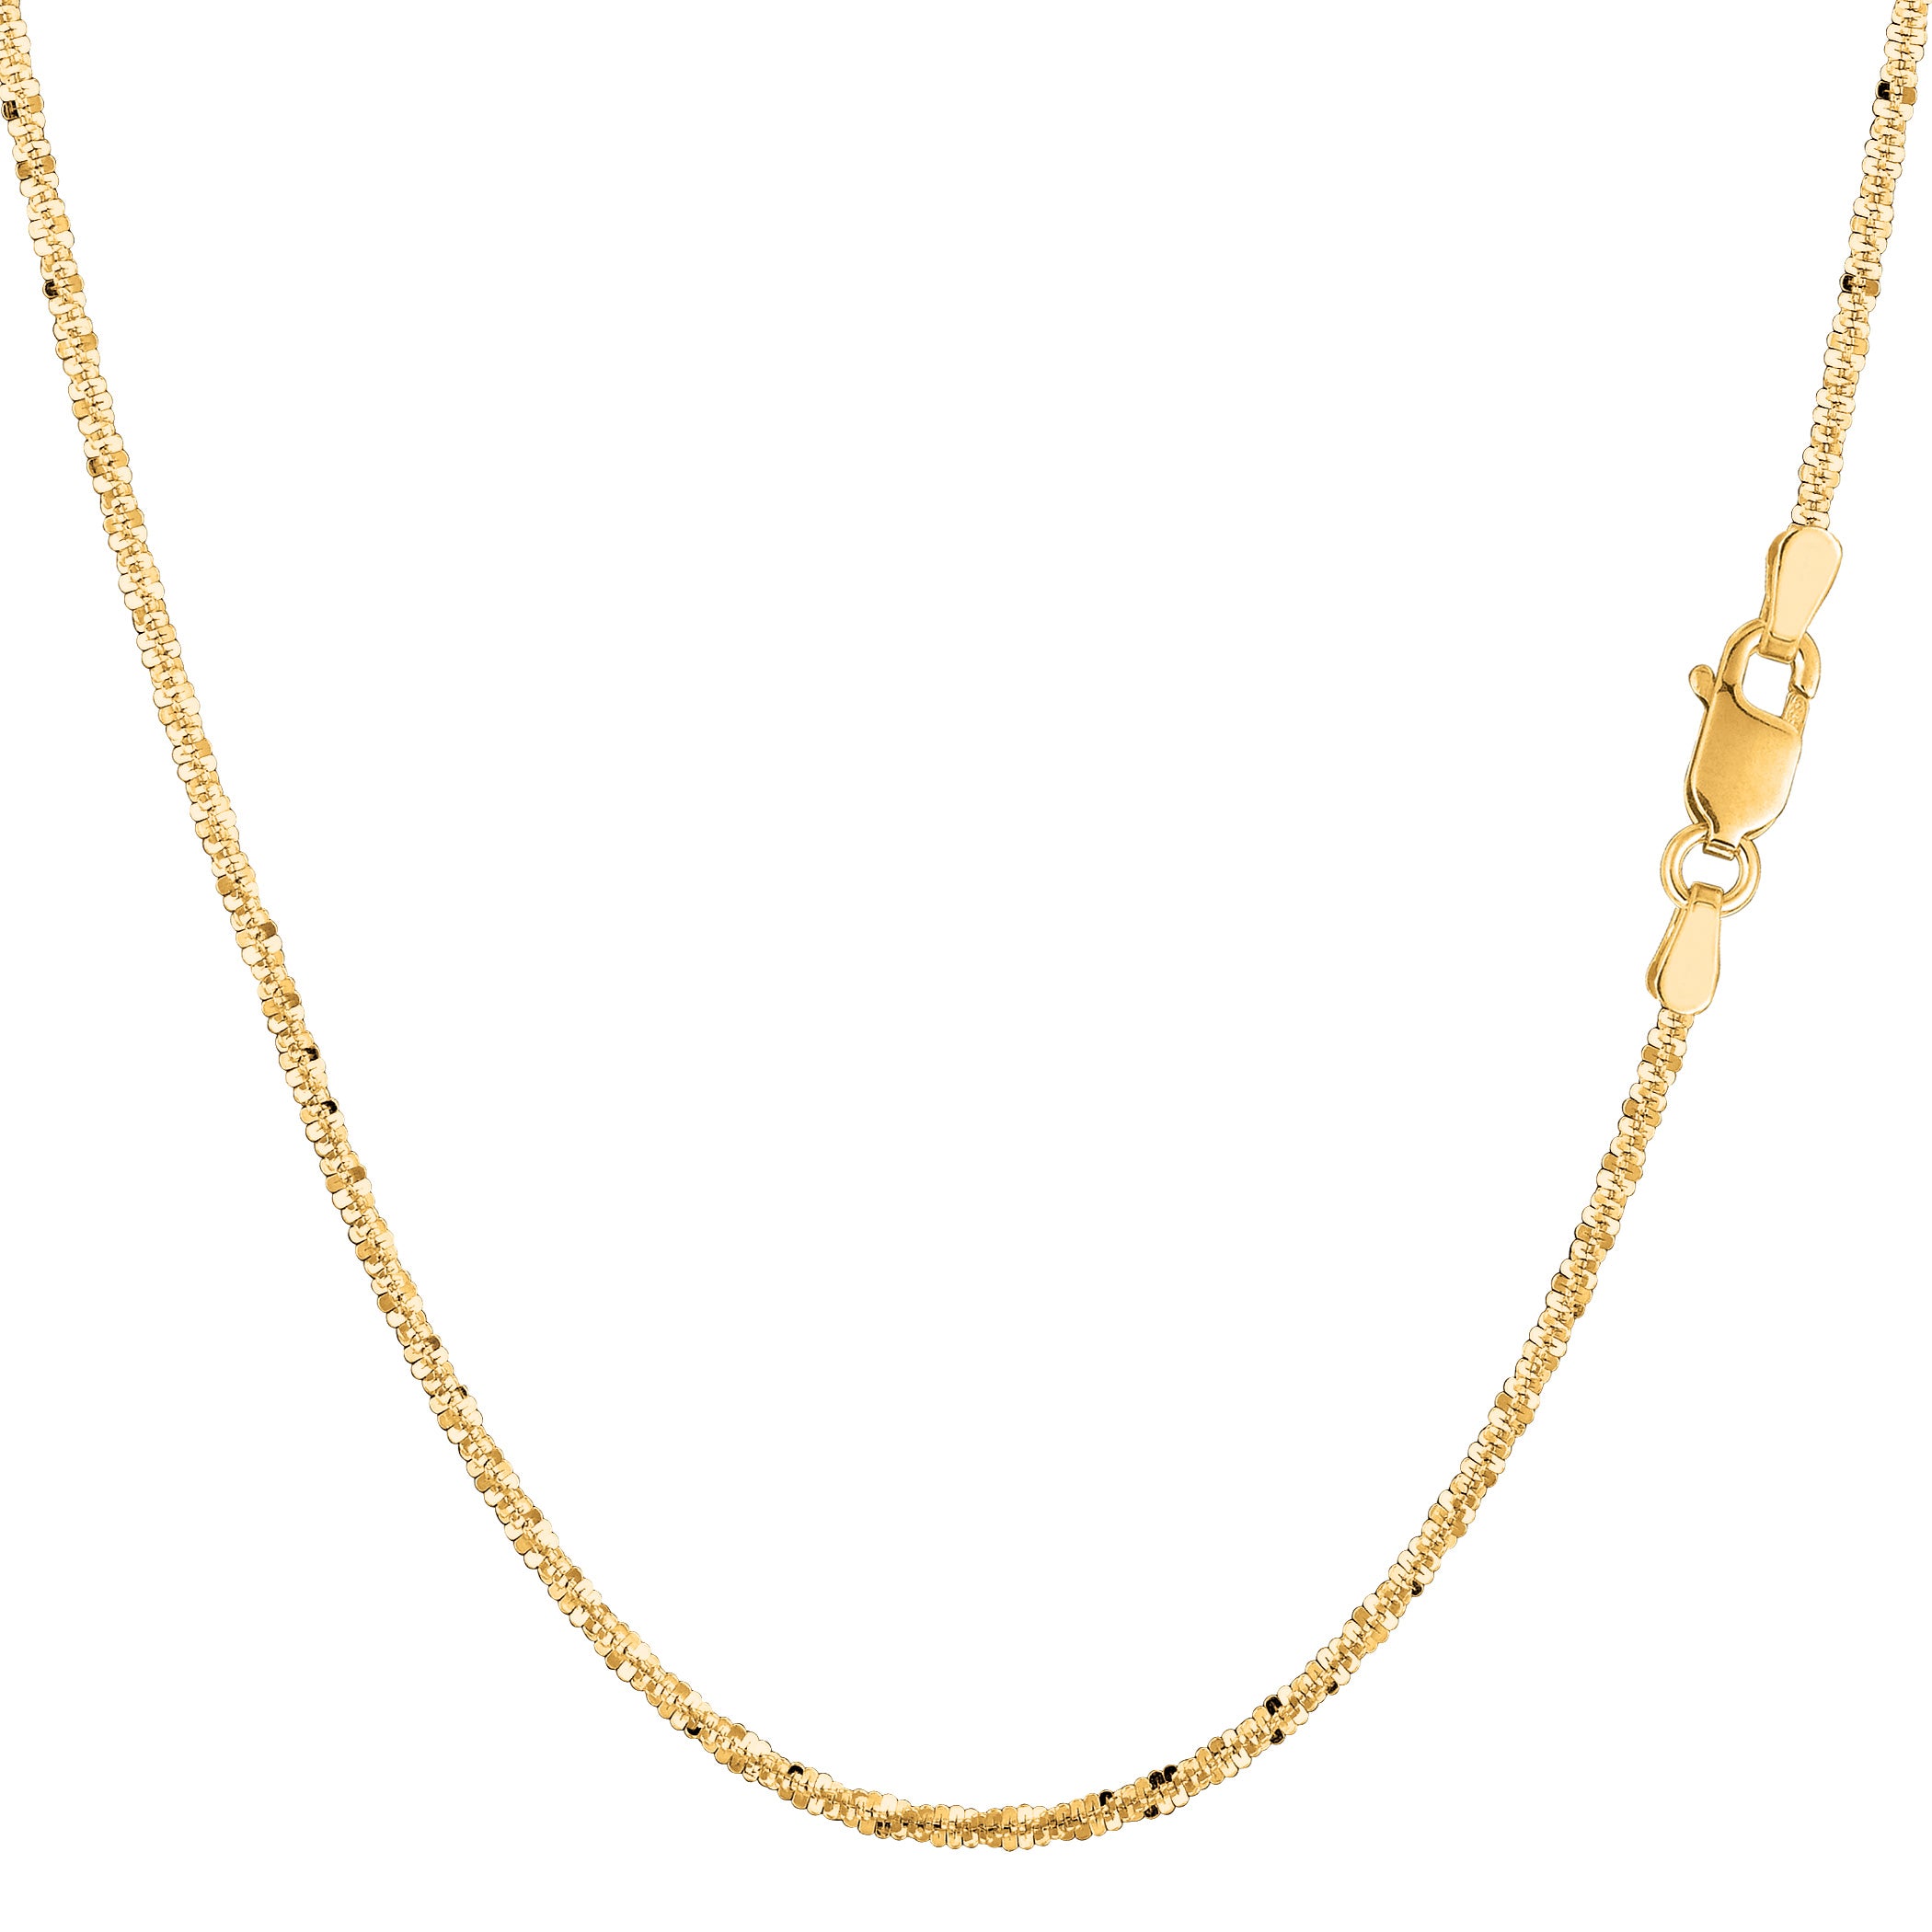 Collana a catena scintillante in oro giallo 14k, gioielli di alta moda da 1,5 mm per uomo e donna